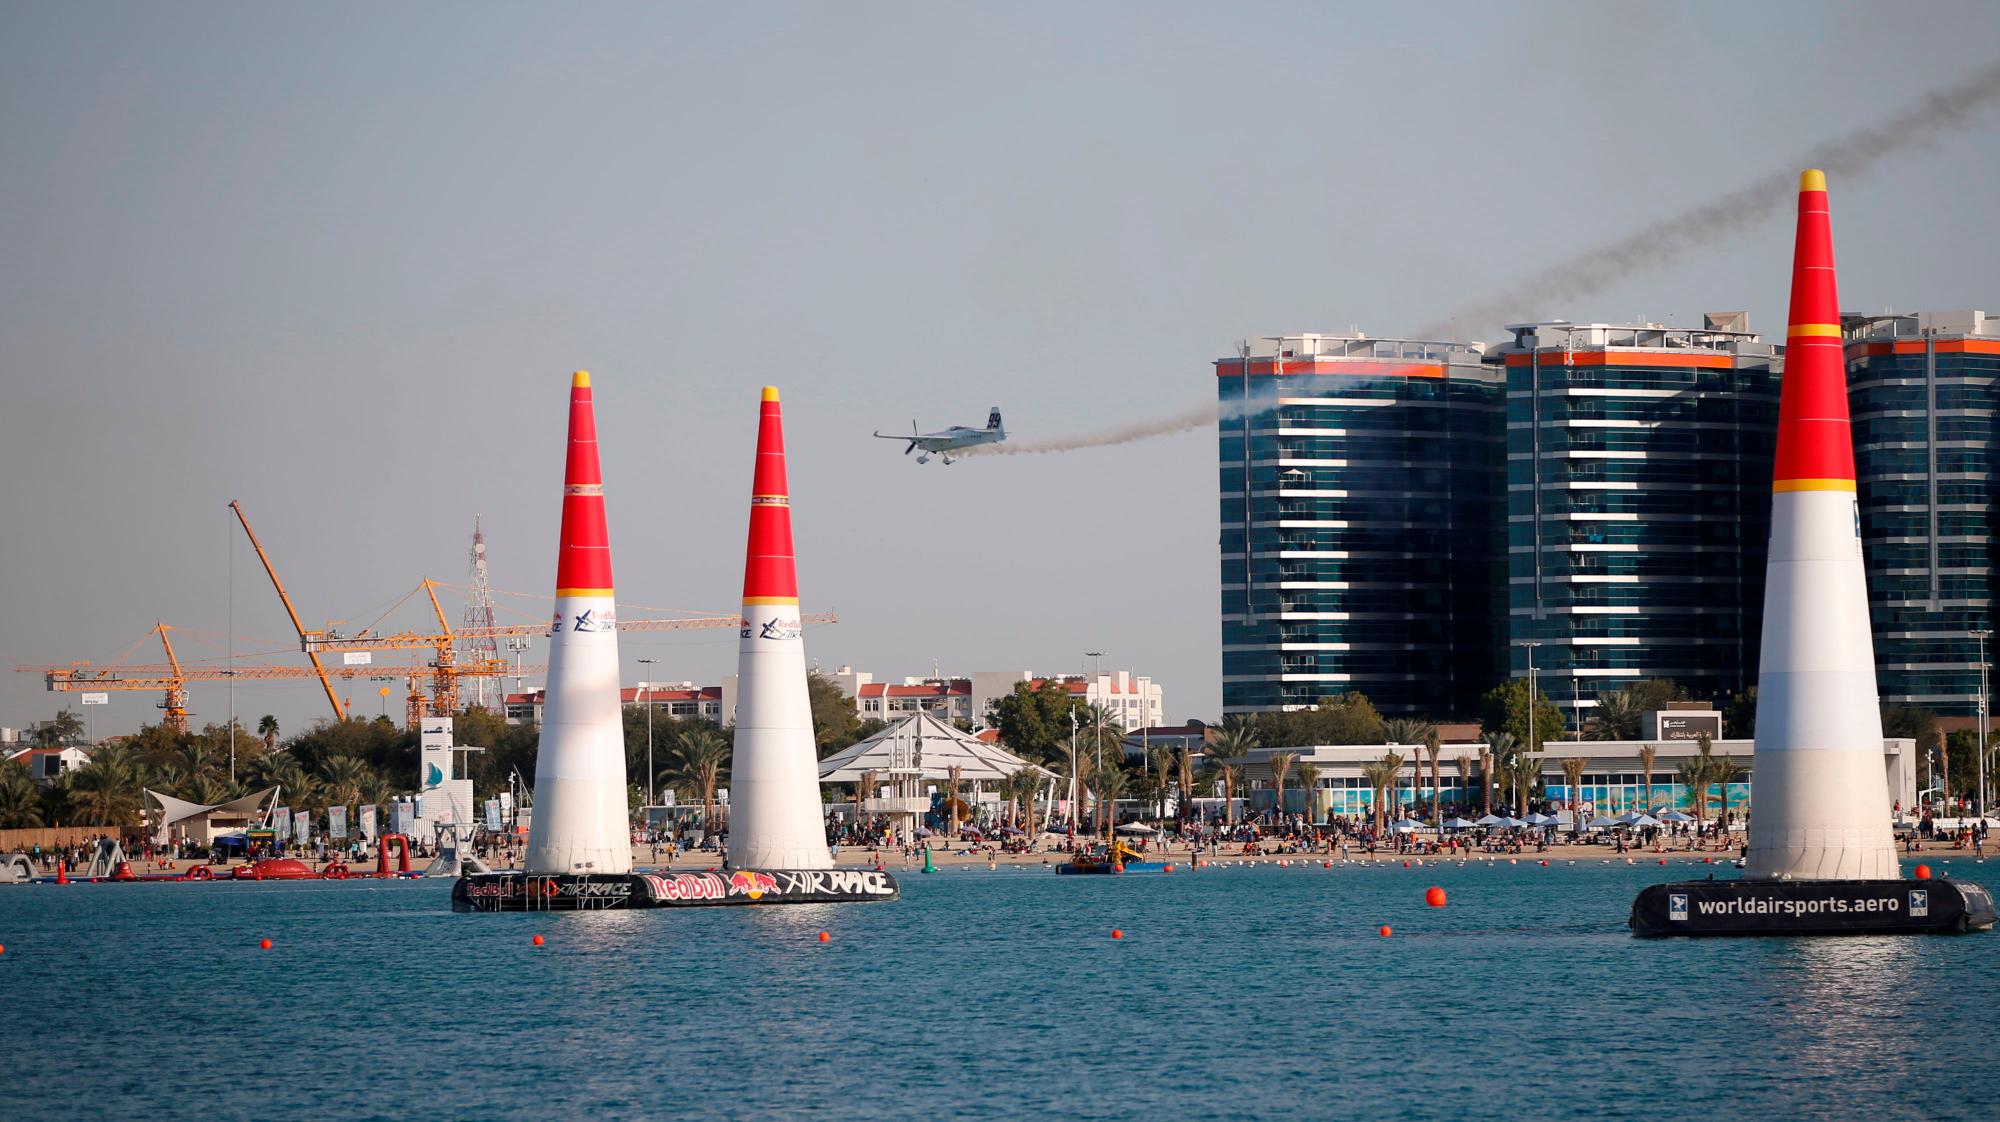 Abu Dhabi (Emiratos Árabes Unidos), 09/02 / 2019.- El ganador del tercer lugar Michael Goulian de los Estados Unidos se presenta durante los últimos cuatro del Campeonato Mundial Red Bull Air Race en Abu Dhabi, Emiratos Árabes Unidos, 09 de febrero de 2019. (Emiratos Árabes Unidos, Estados Unidos)